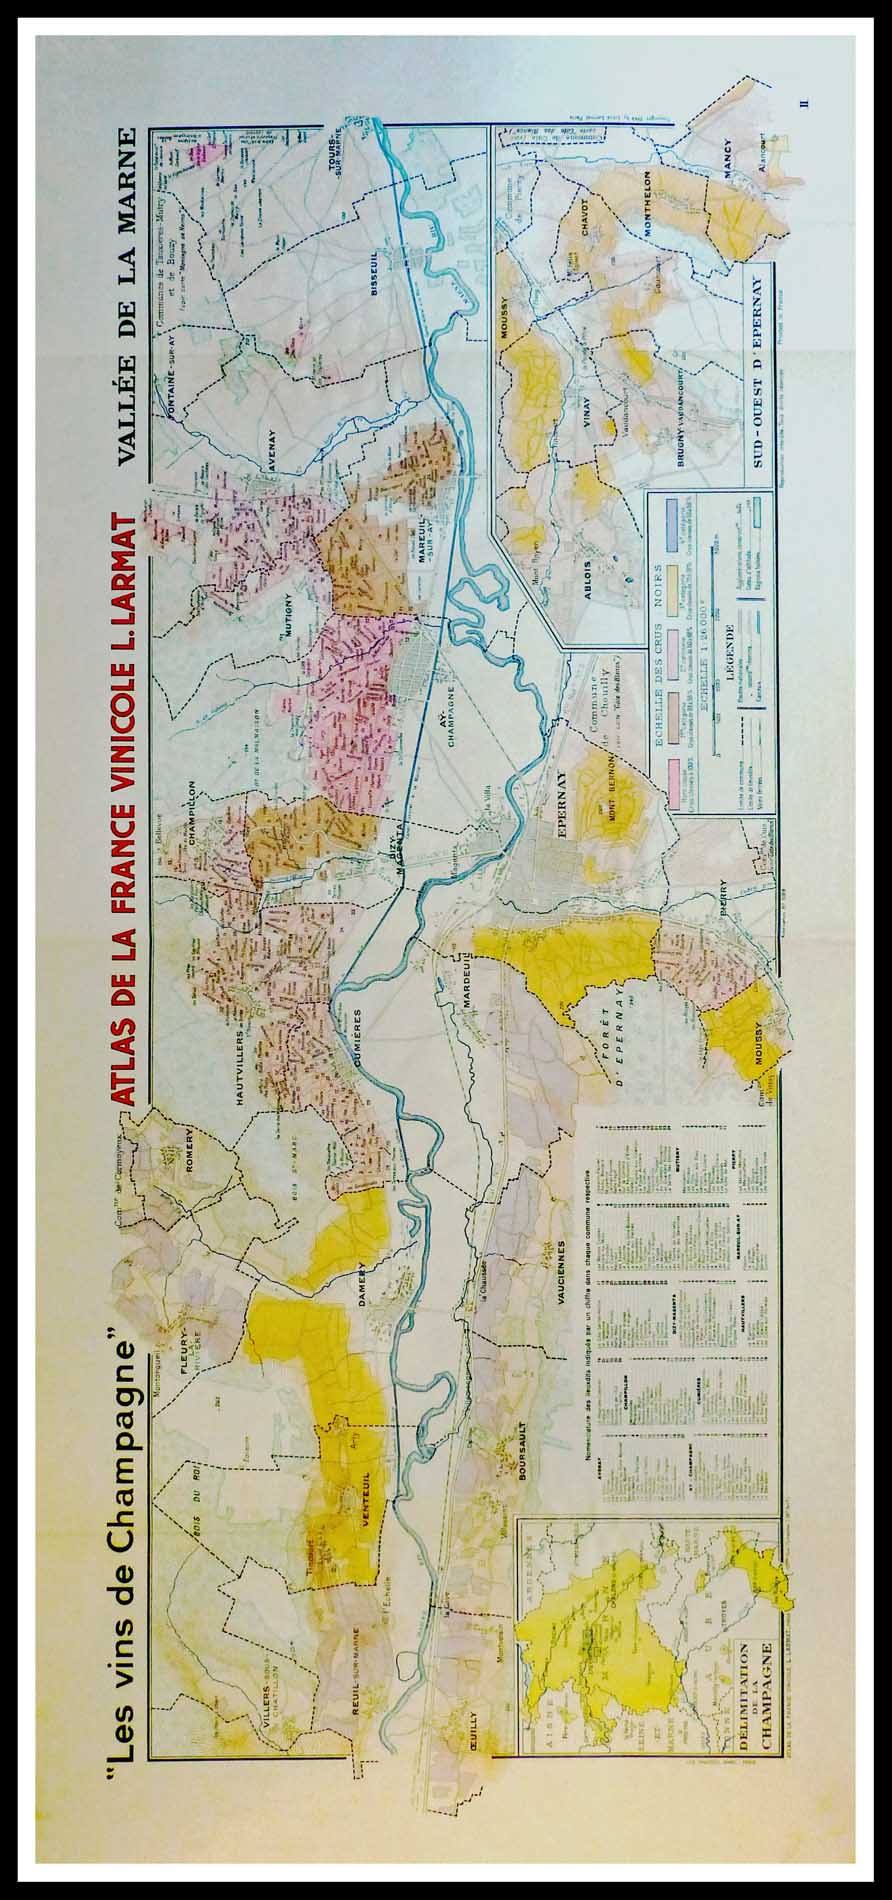 (alt="Original vintage French wine maps Les Vins de Champagne Vallée de la Marne, Atlas de France Vinicole 1942 Louis LARMAT")